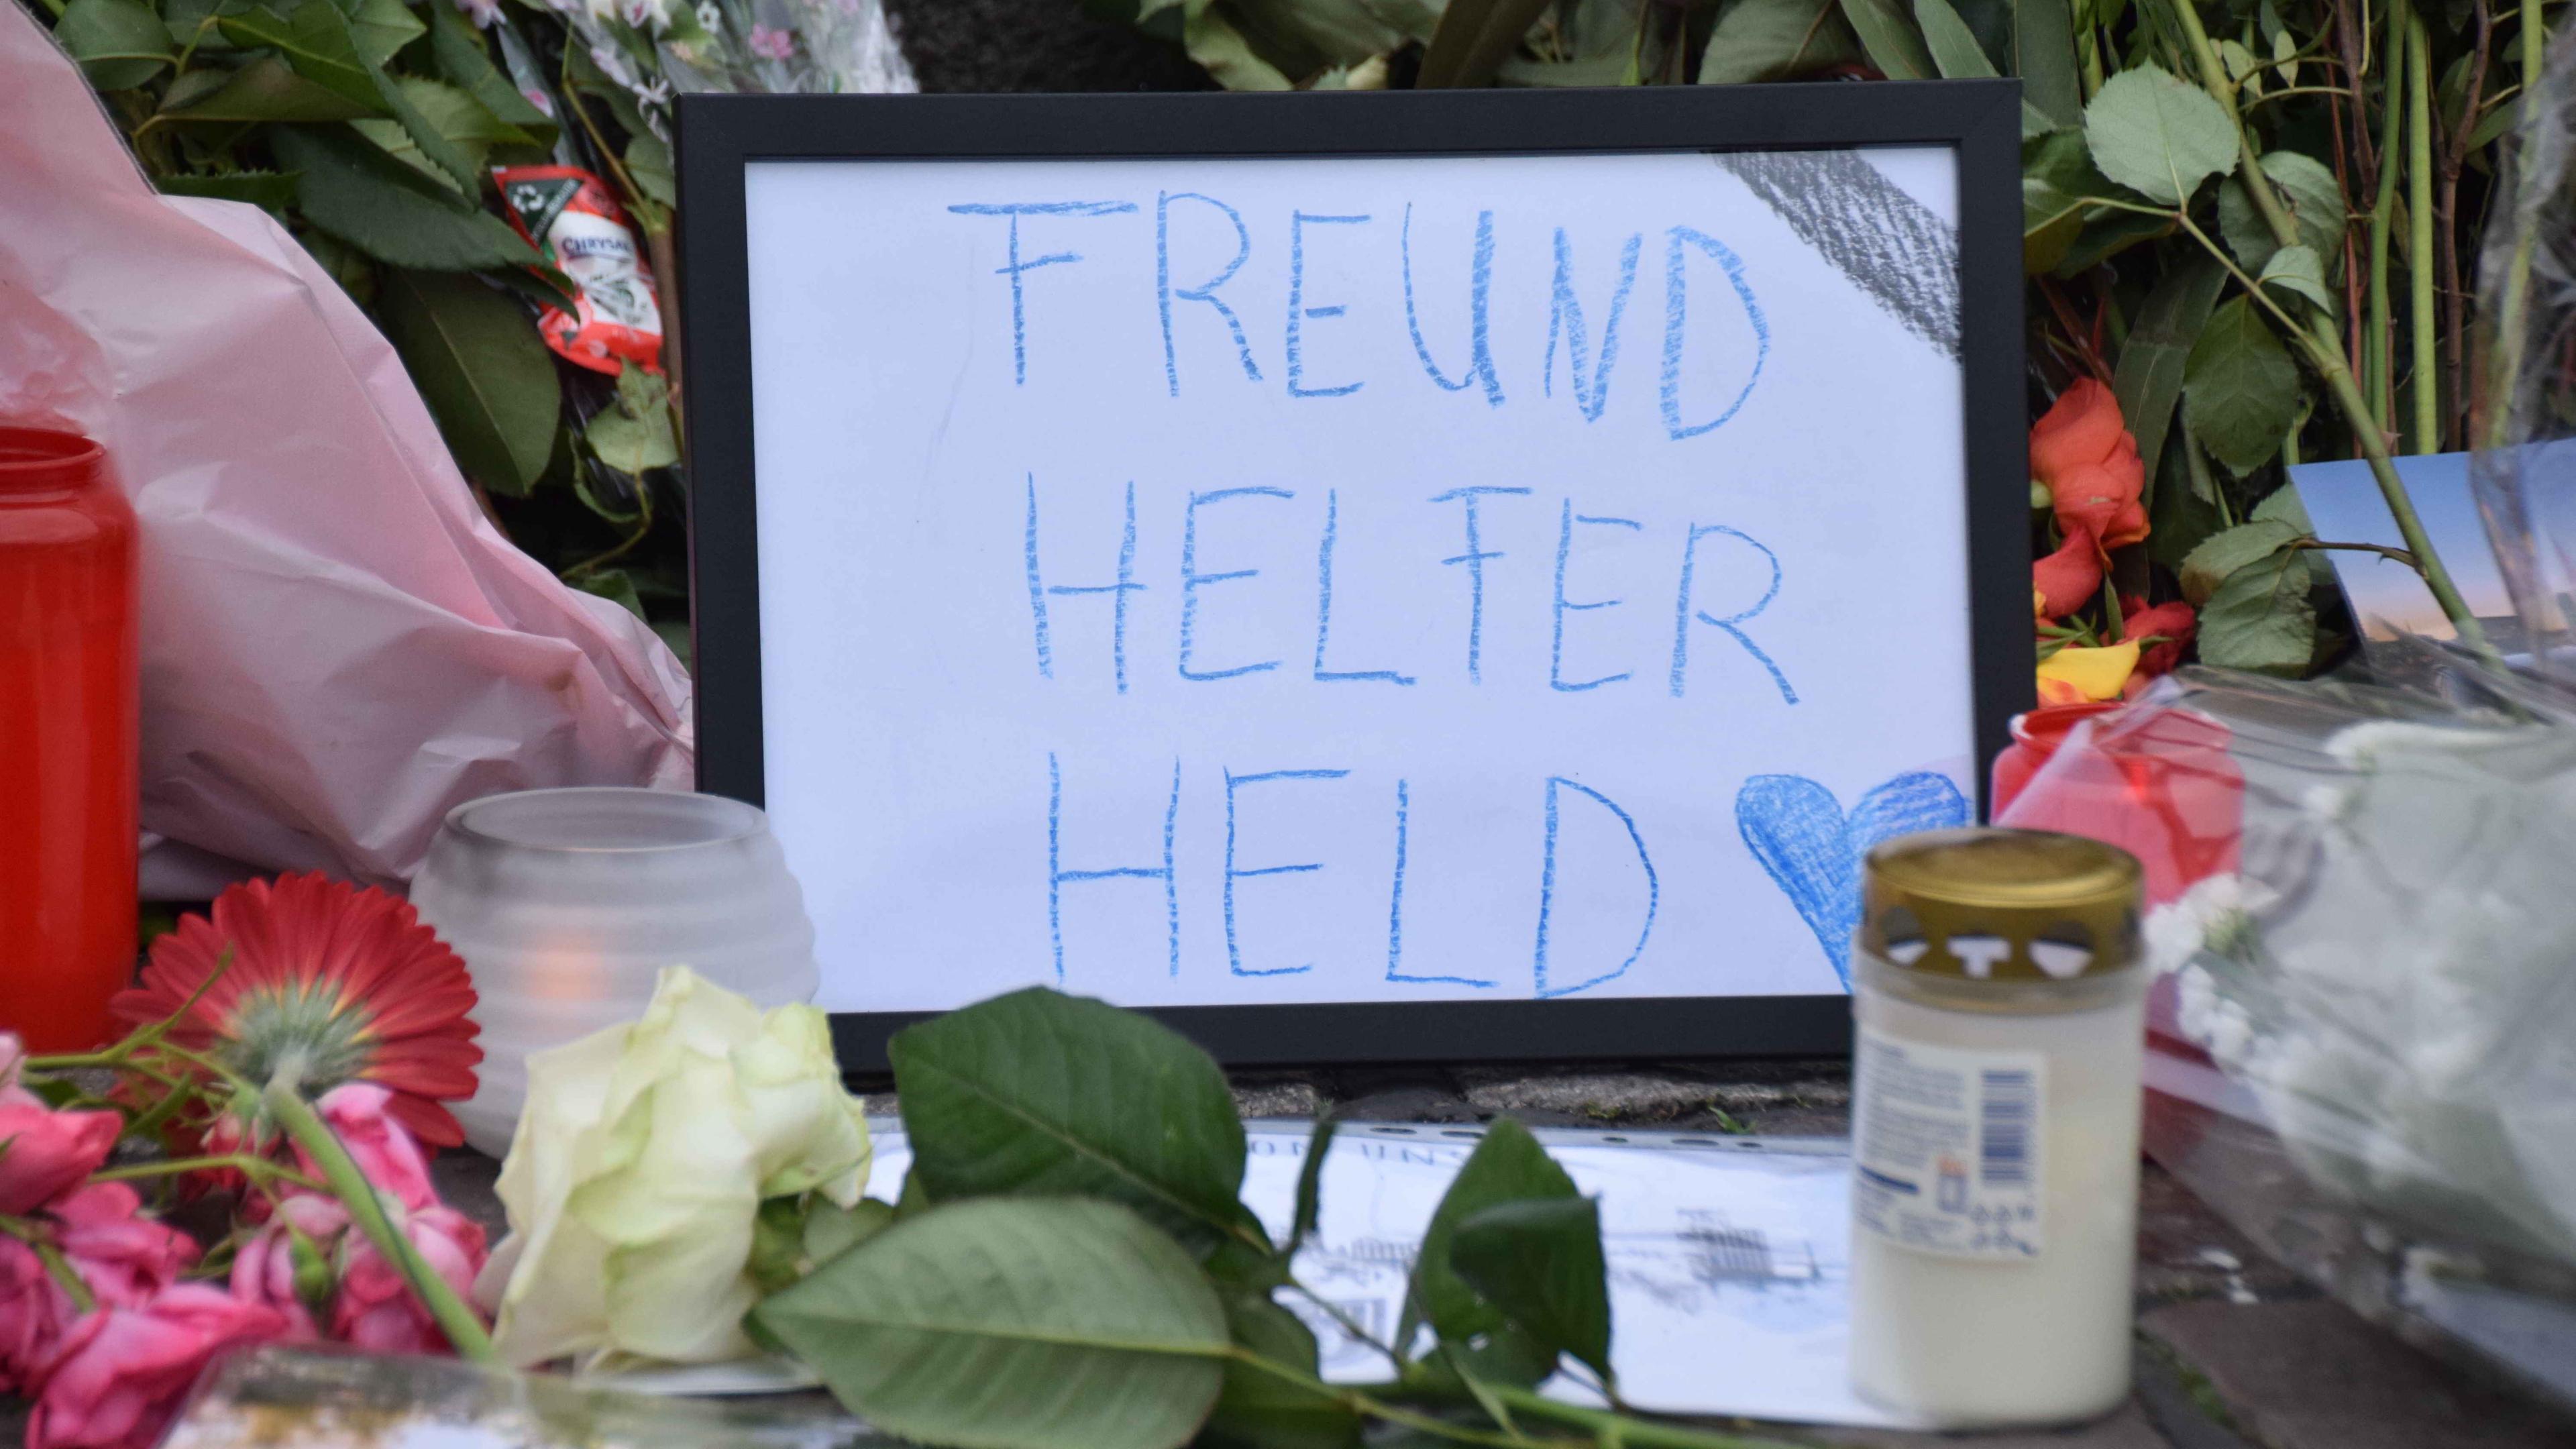 Baden-Württemberg, Mannheim: "Freund Helfer Held" ist auf einem schwarz gerahmten Blatt zu lesen